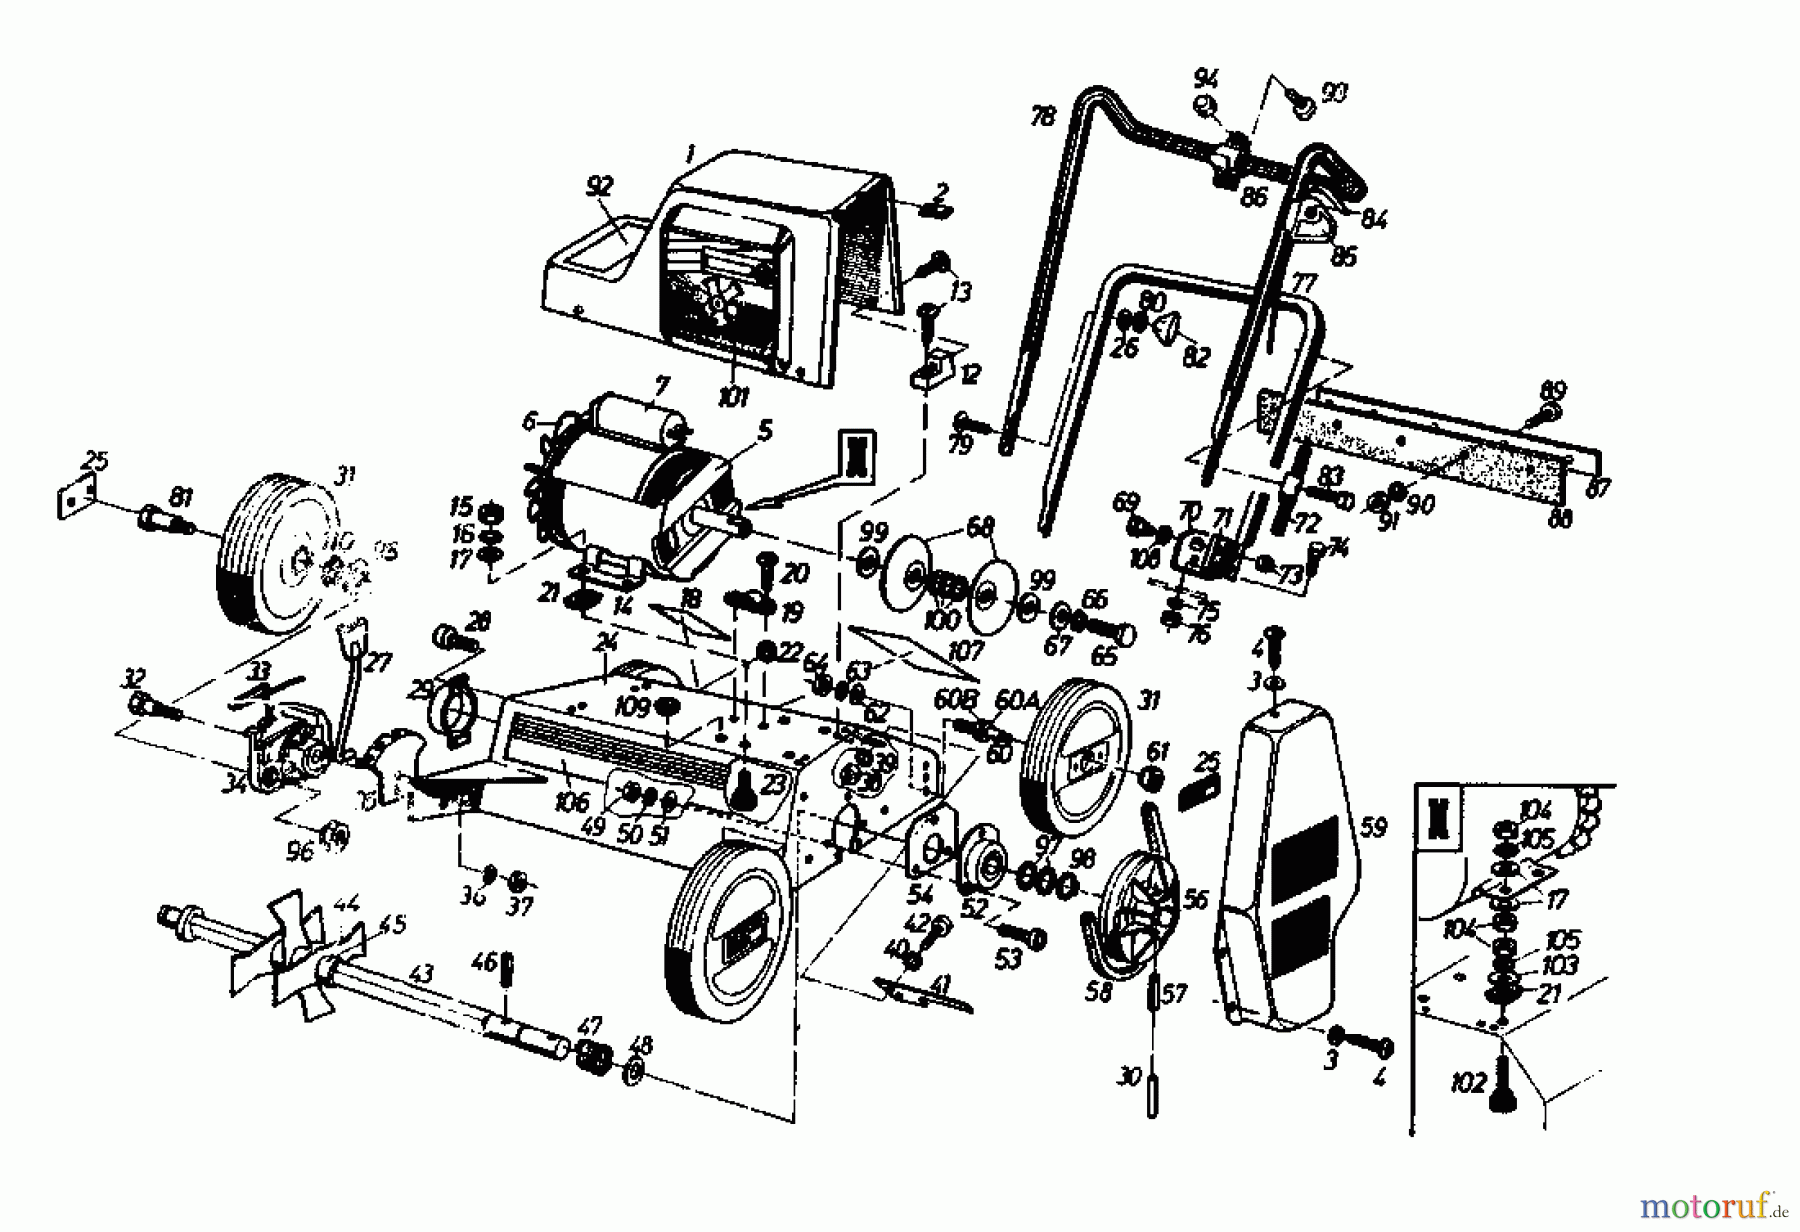  Gutbrod Electric verticutter VS 40 E 02966.06  (1988) Basic machine